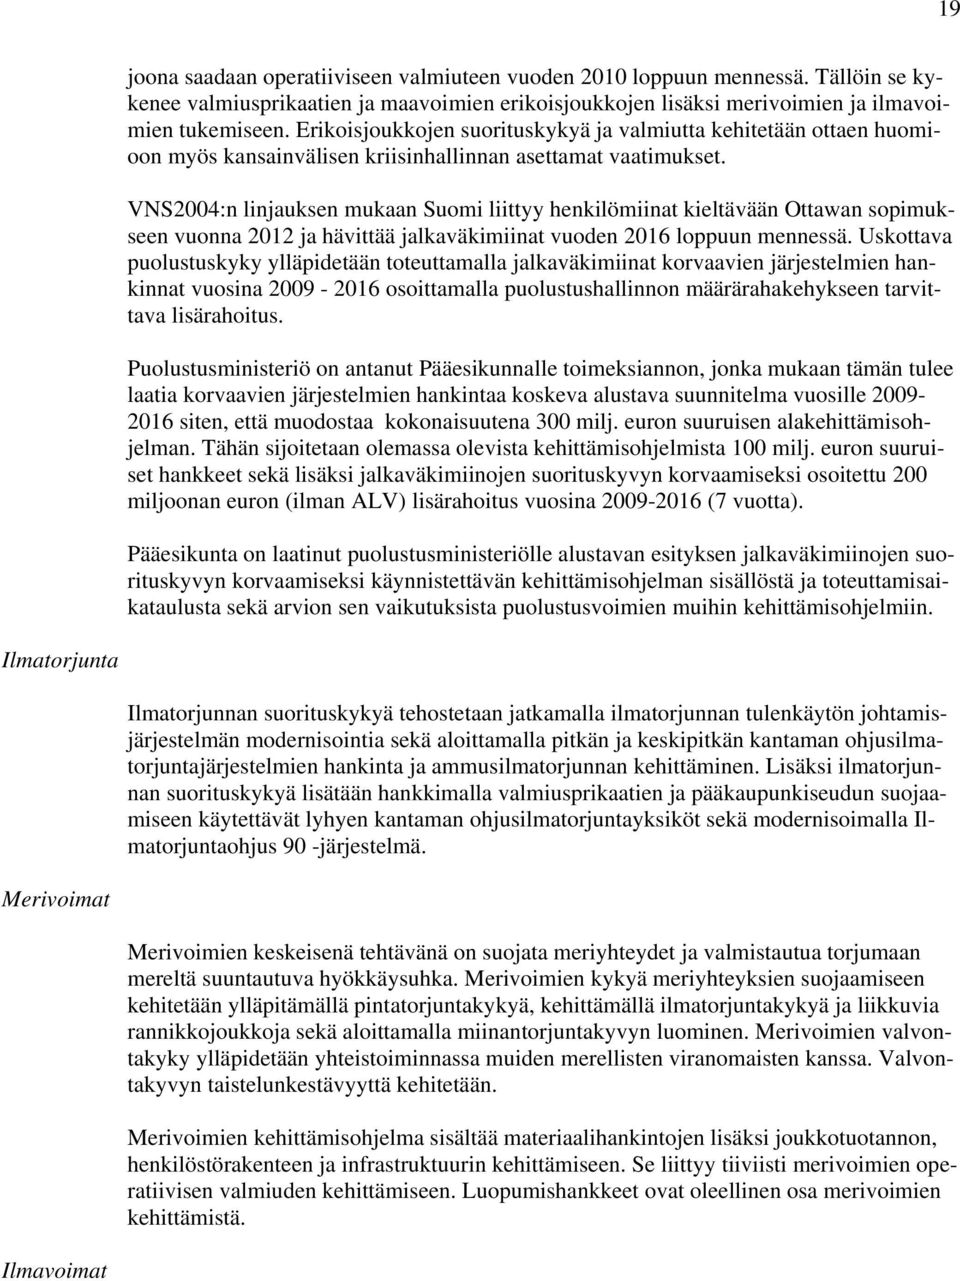 VNS2004:n linjauksen mukaan Suomi liittyy henkilömiinat kieltävään Ottawan sopimukseen vuonna 2012 ja hävittää jalkaväkimiinat vuoden 2016 loppuun mennessä.